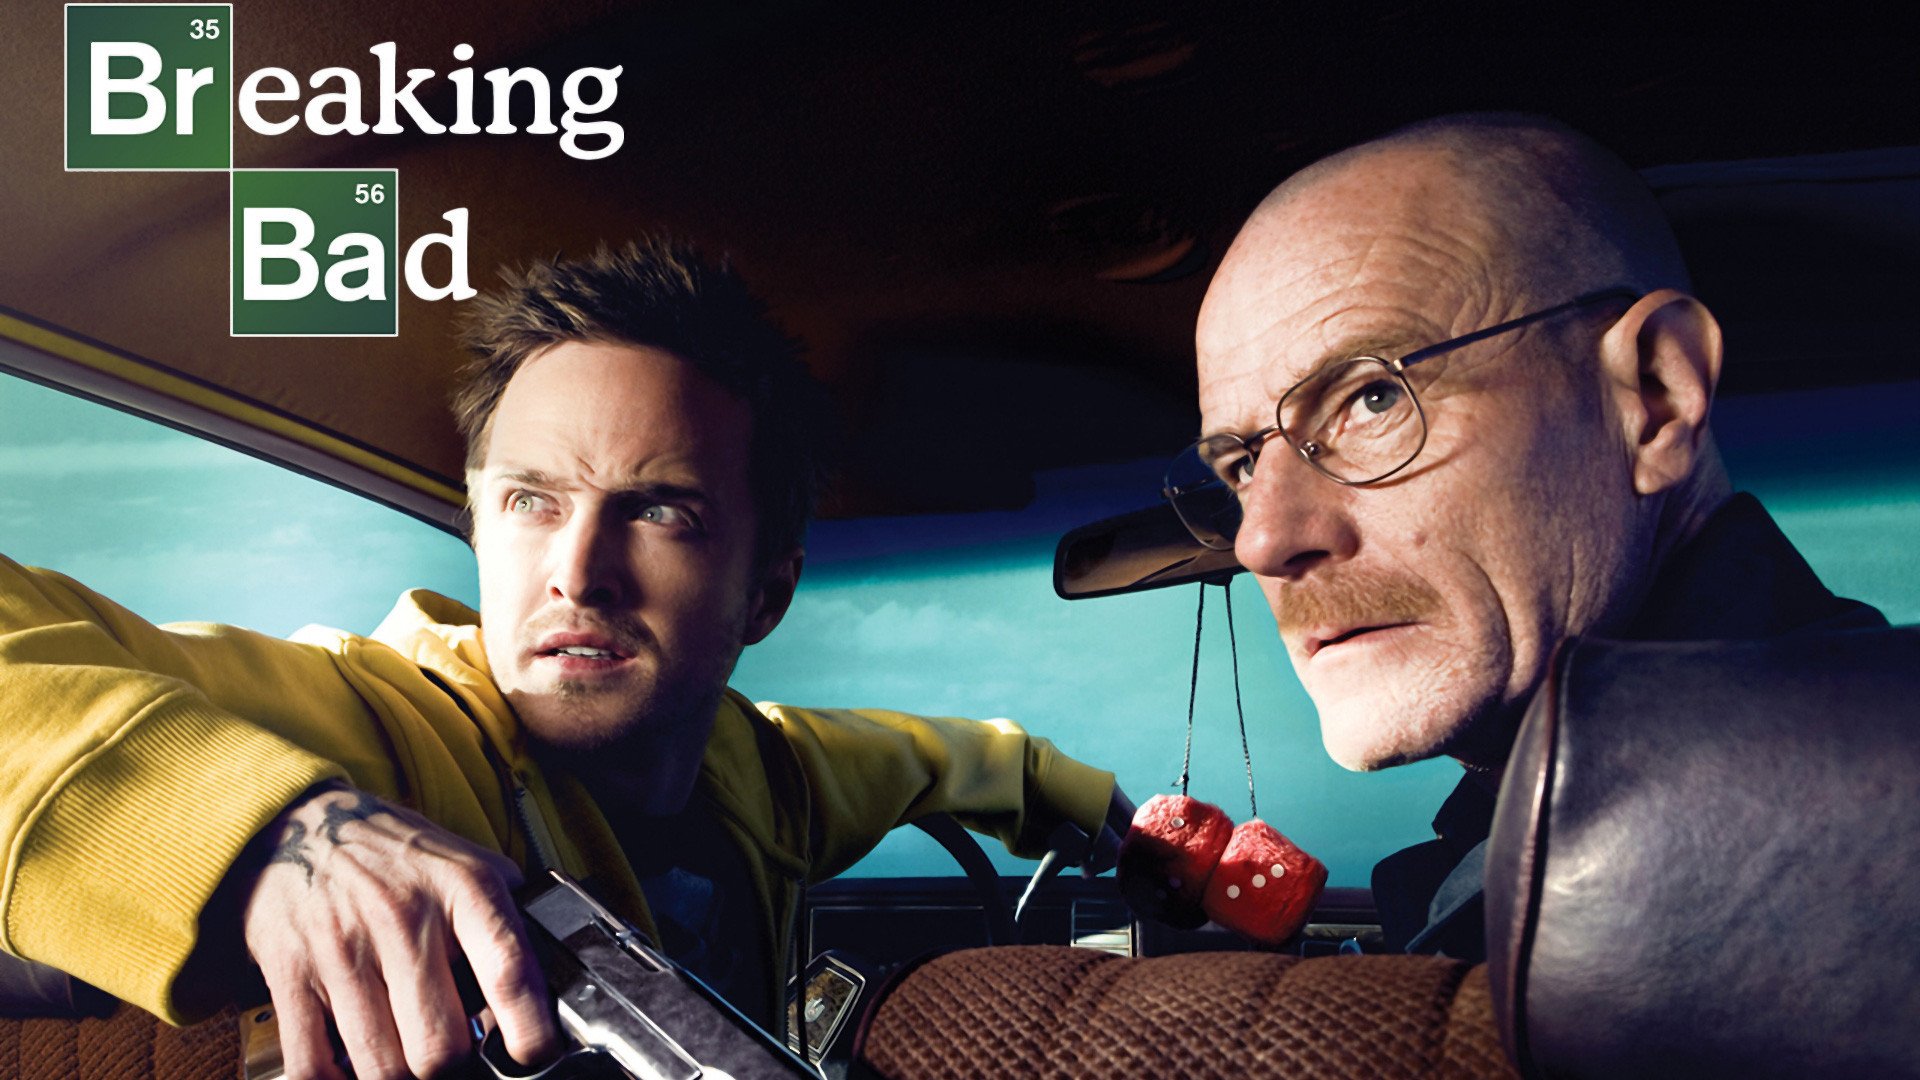 Descarga gratuita de fondo de pantalla para móvil de Breaking Bad, Series De Televisión.